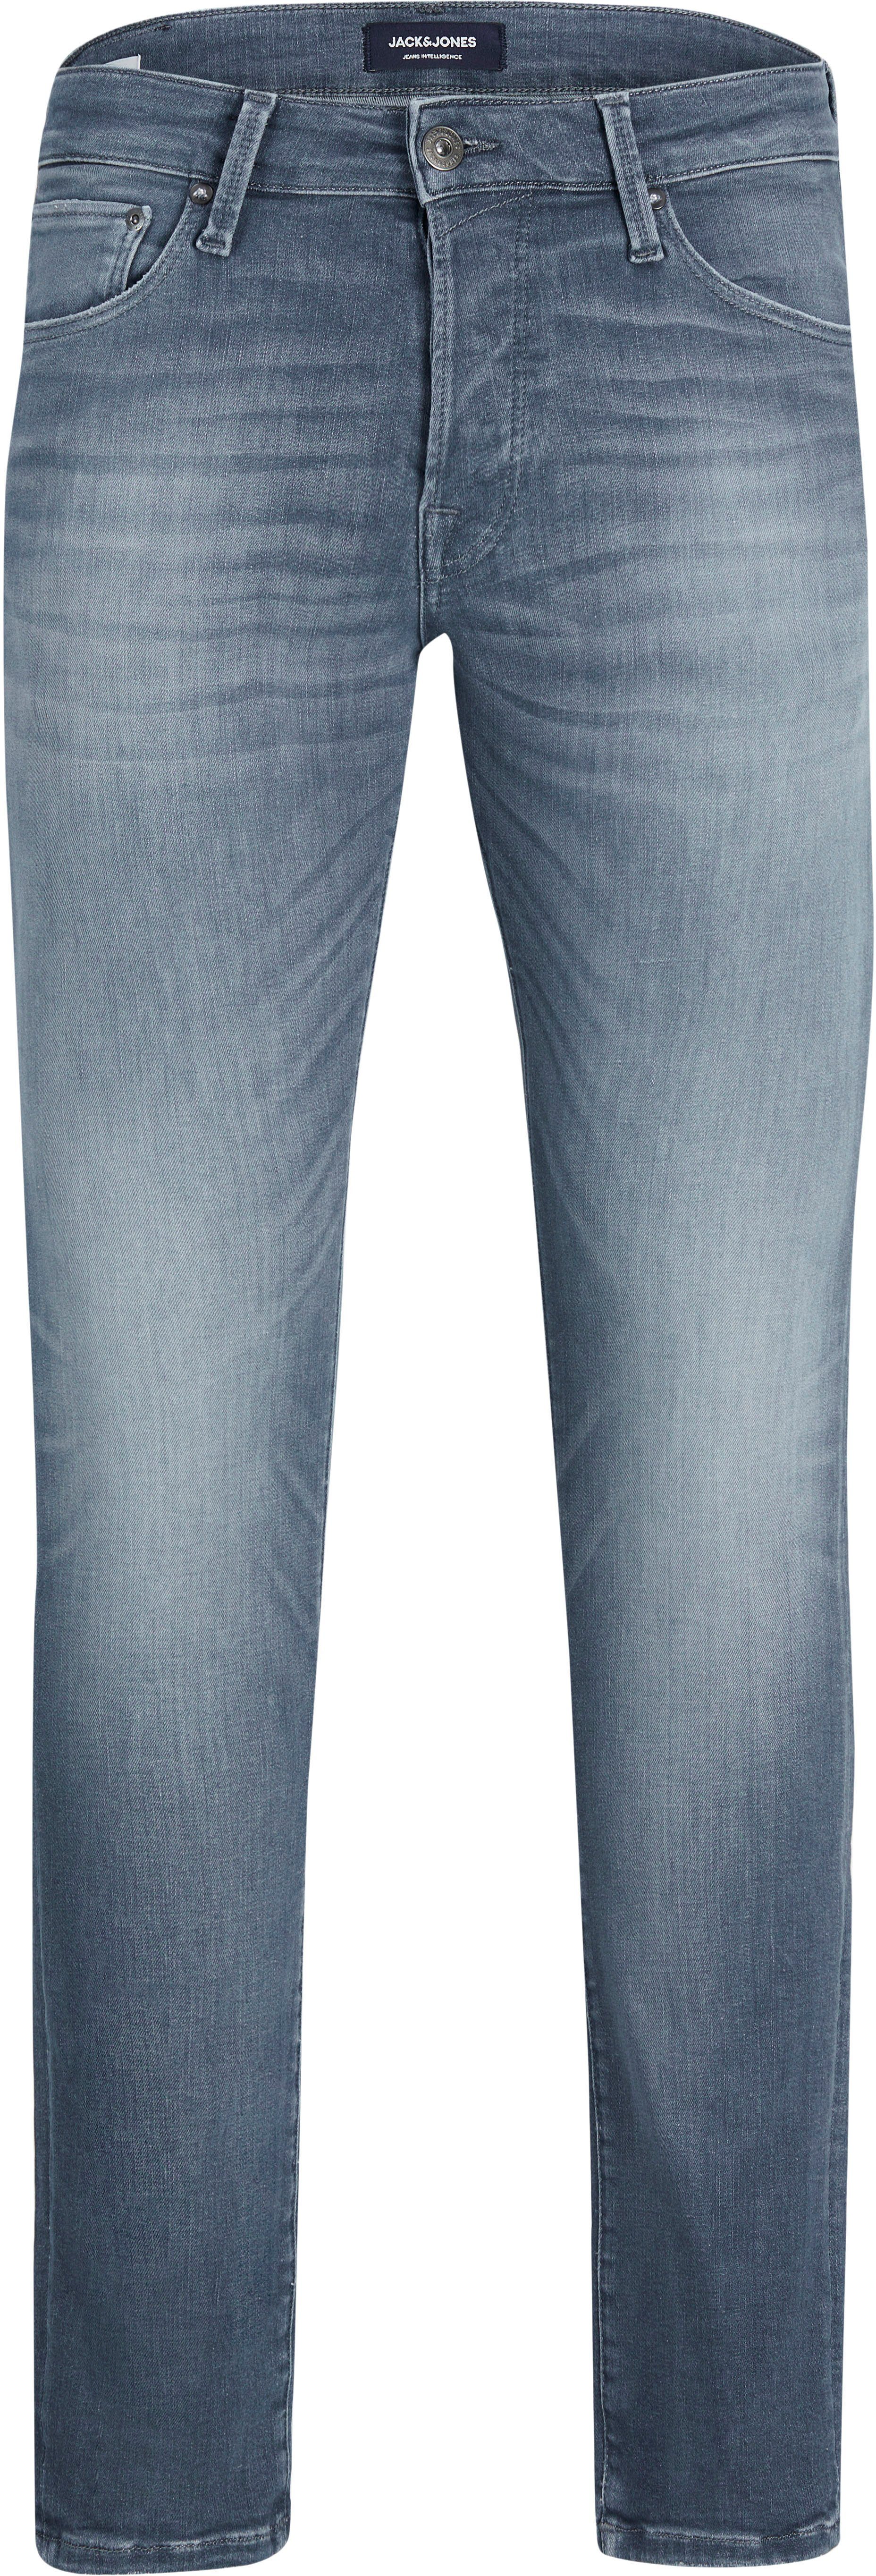 Slim-fit-Jeans GLENN Jones Jack & ICON hellblau